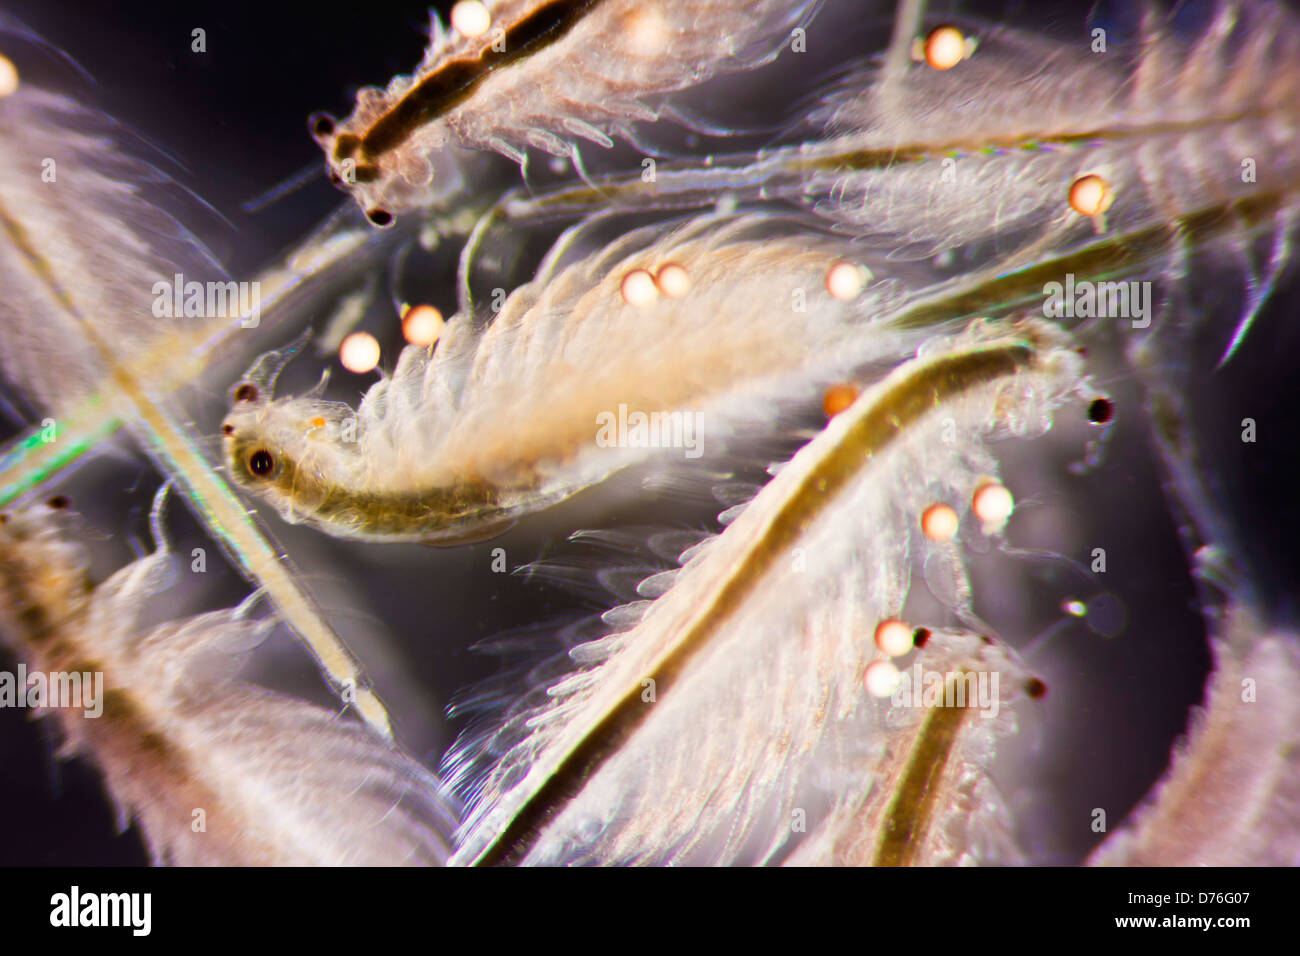 Artemia salina. Artemia salina. Adult crustacean